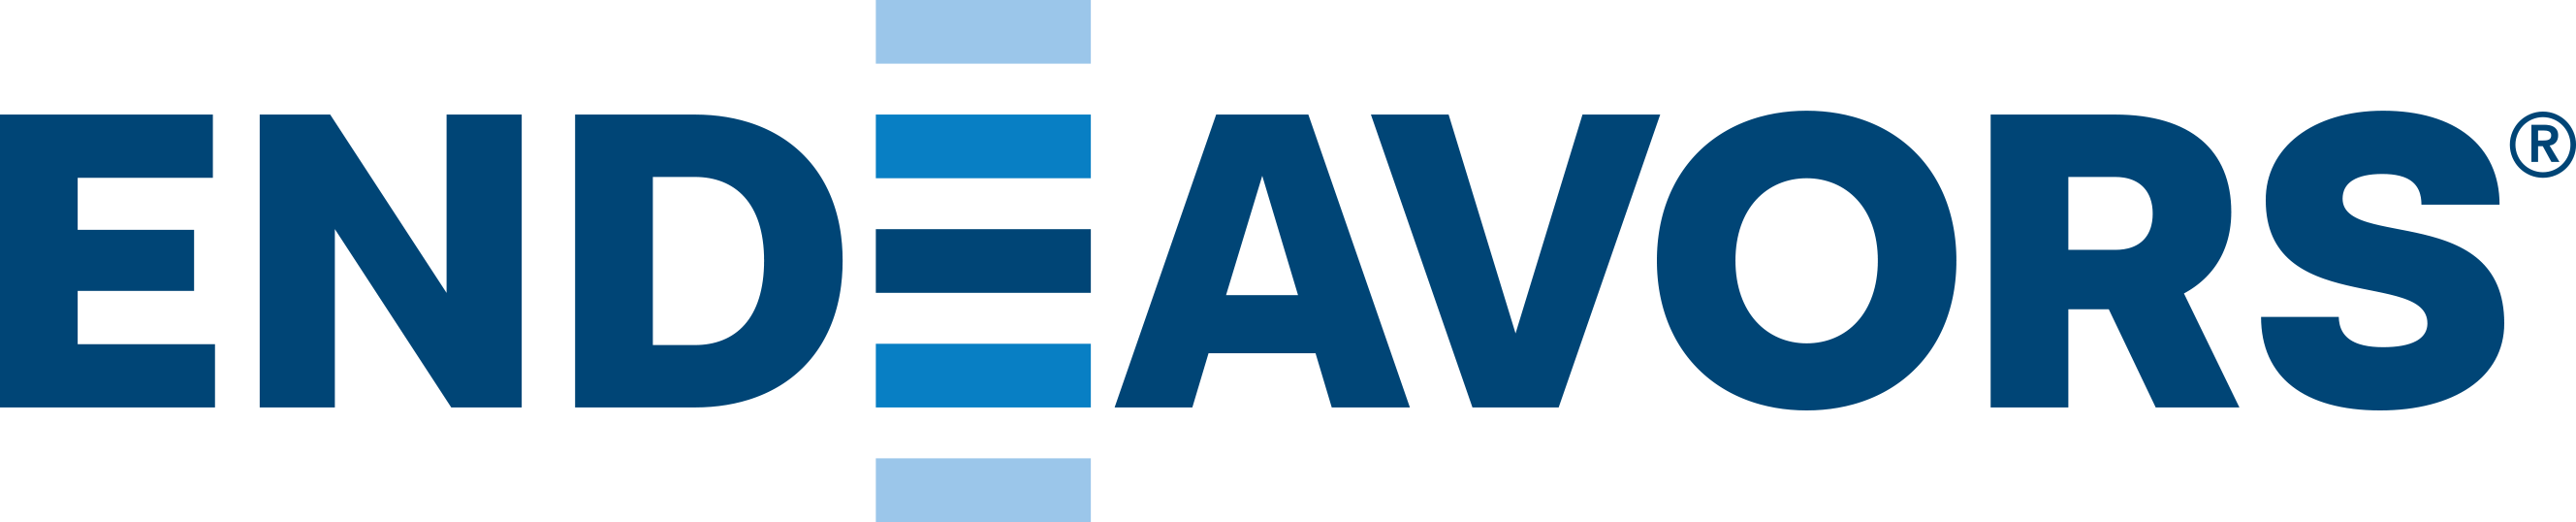 Endeavors Company Logo